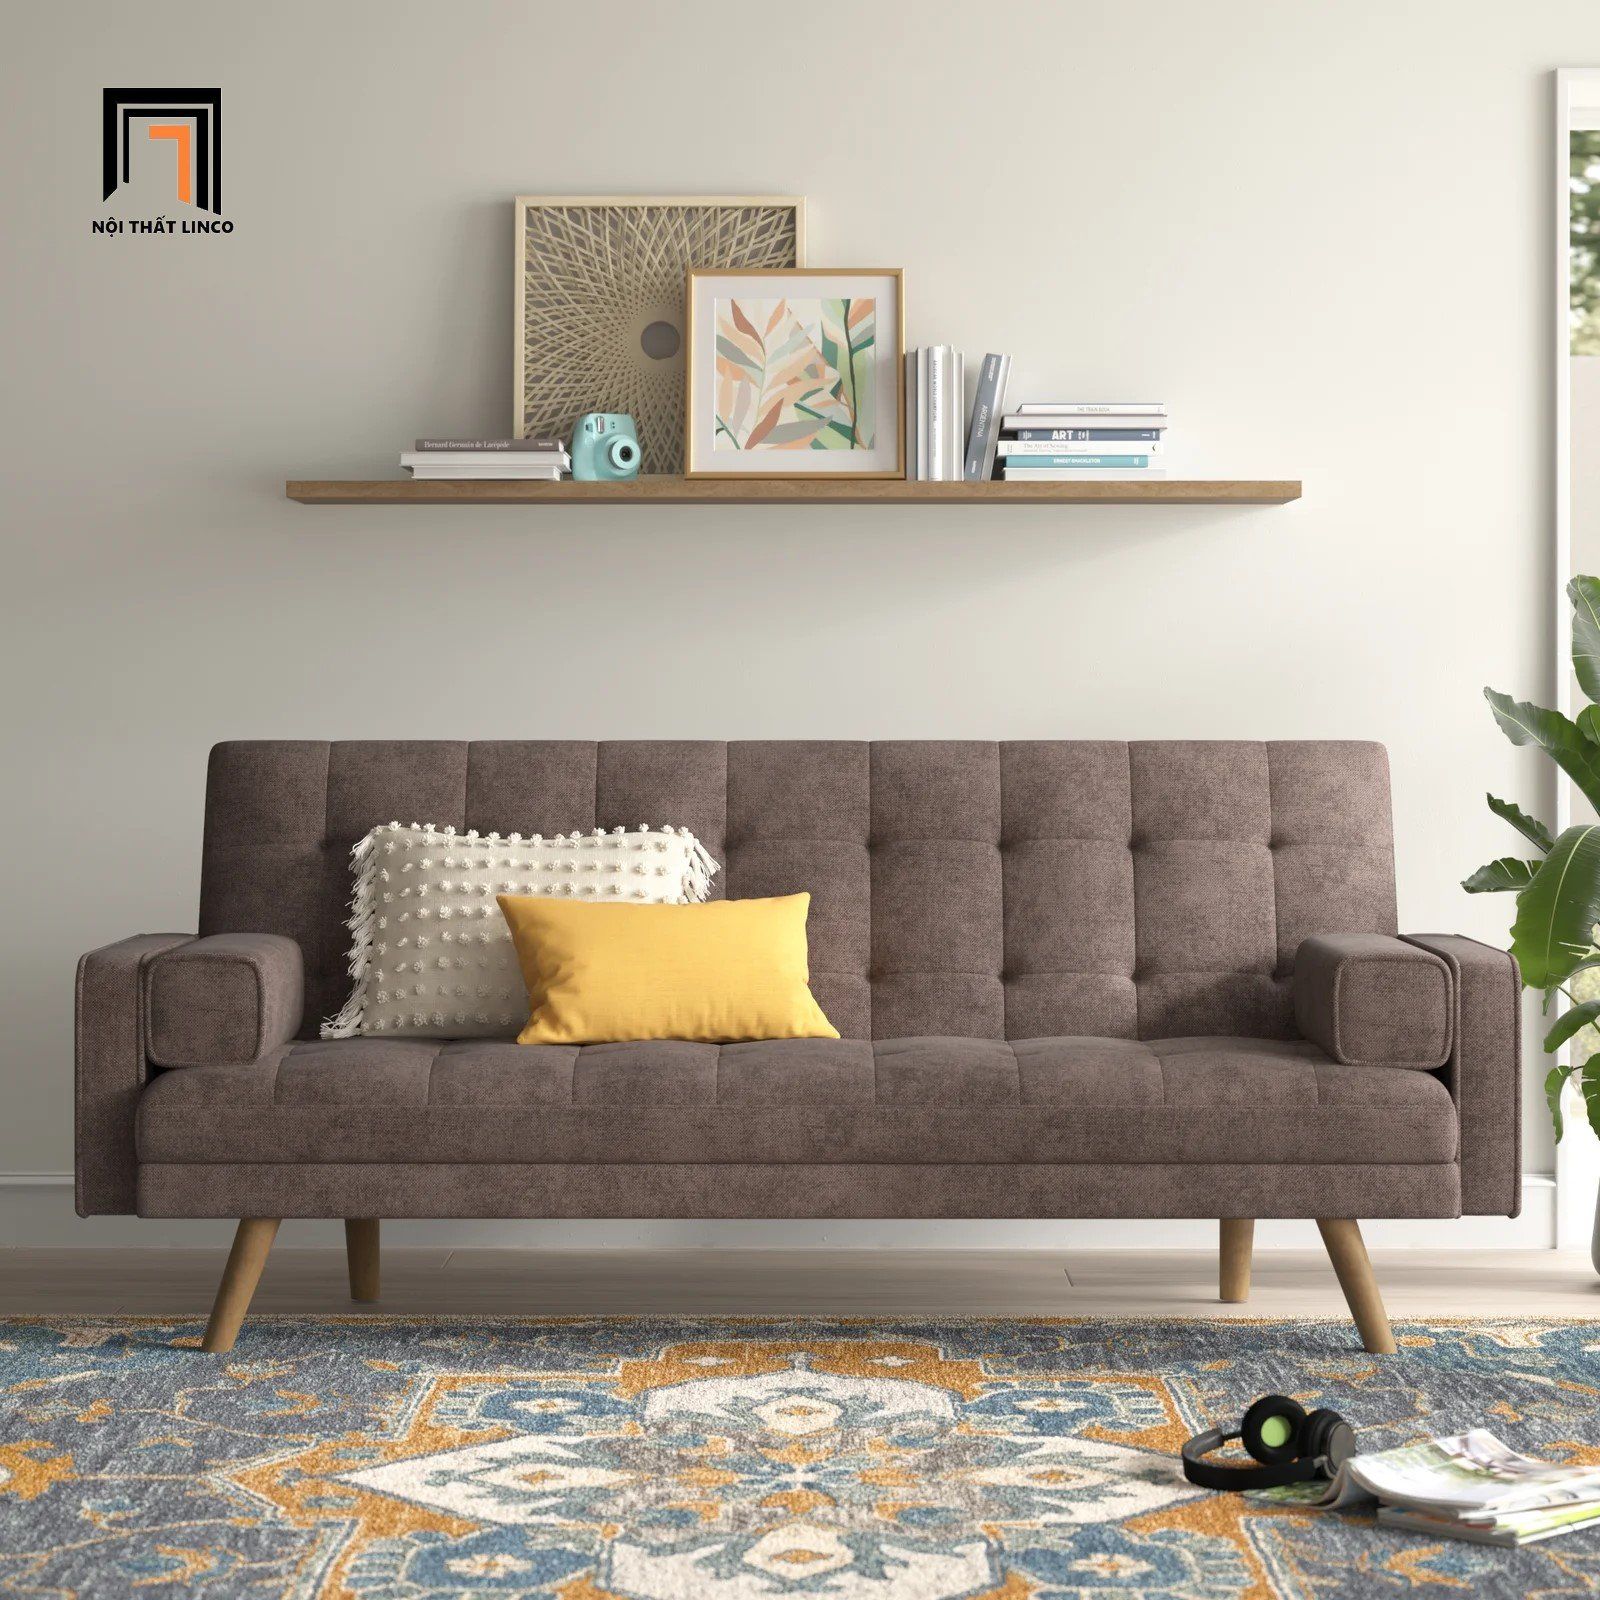  Ghế sofa giường nằm thông minh GB19 Mistana 1m9 giá rẻ 